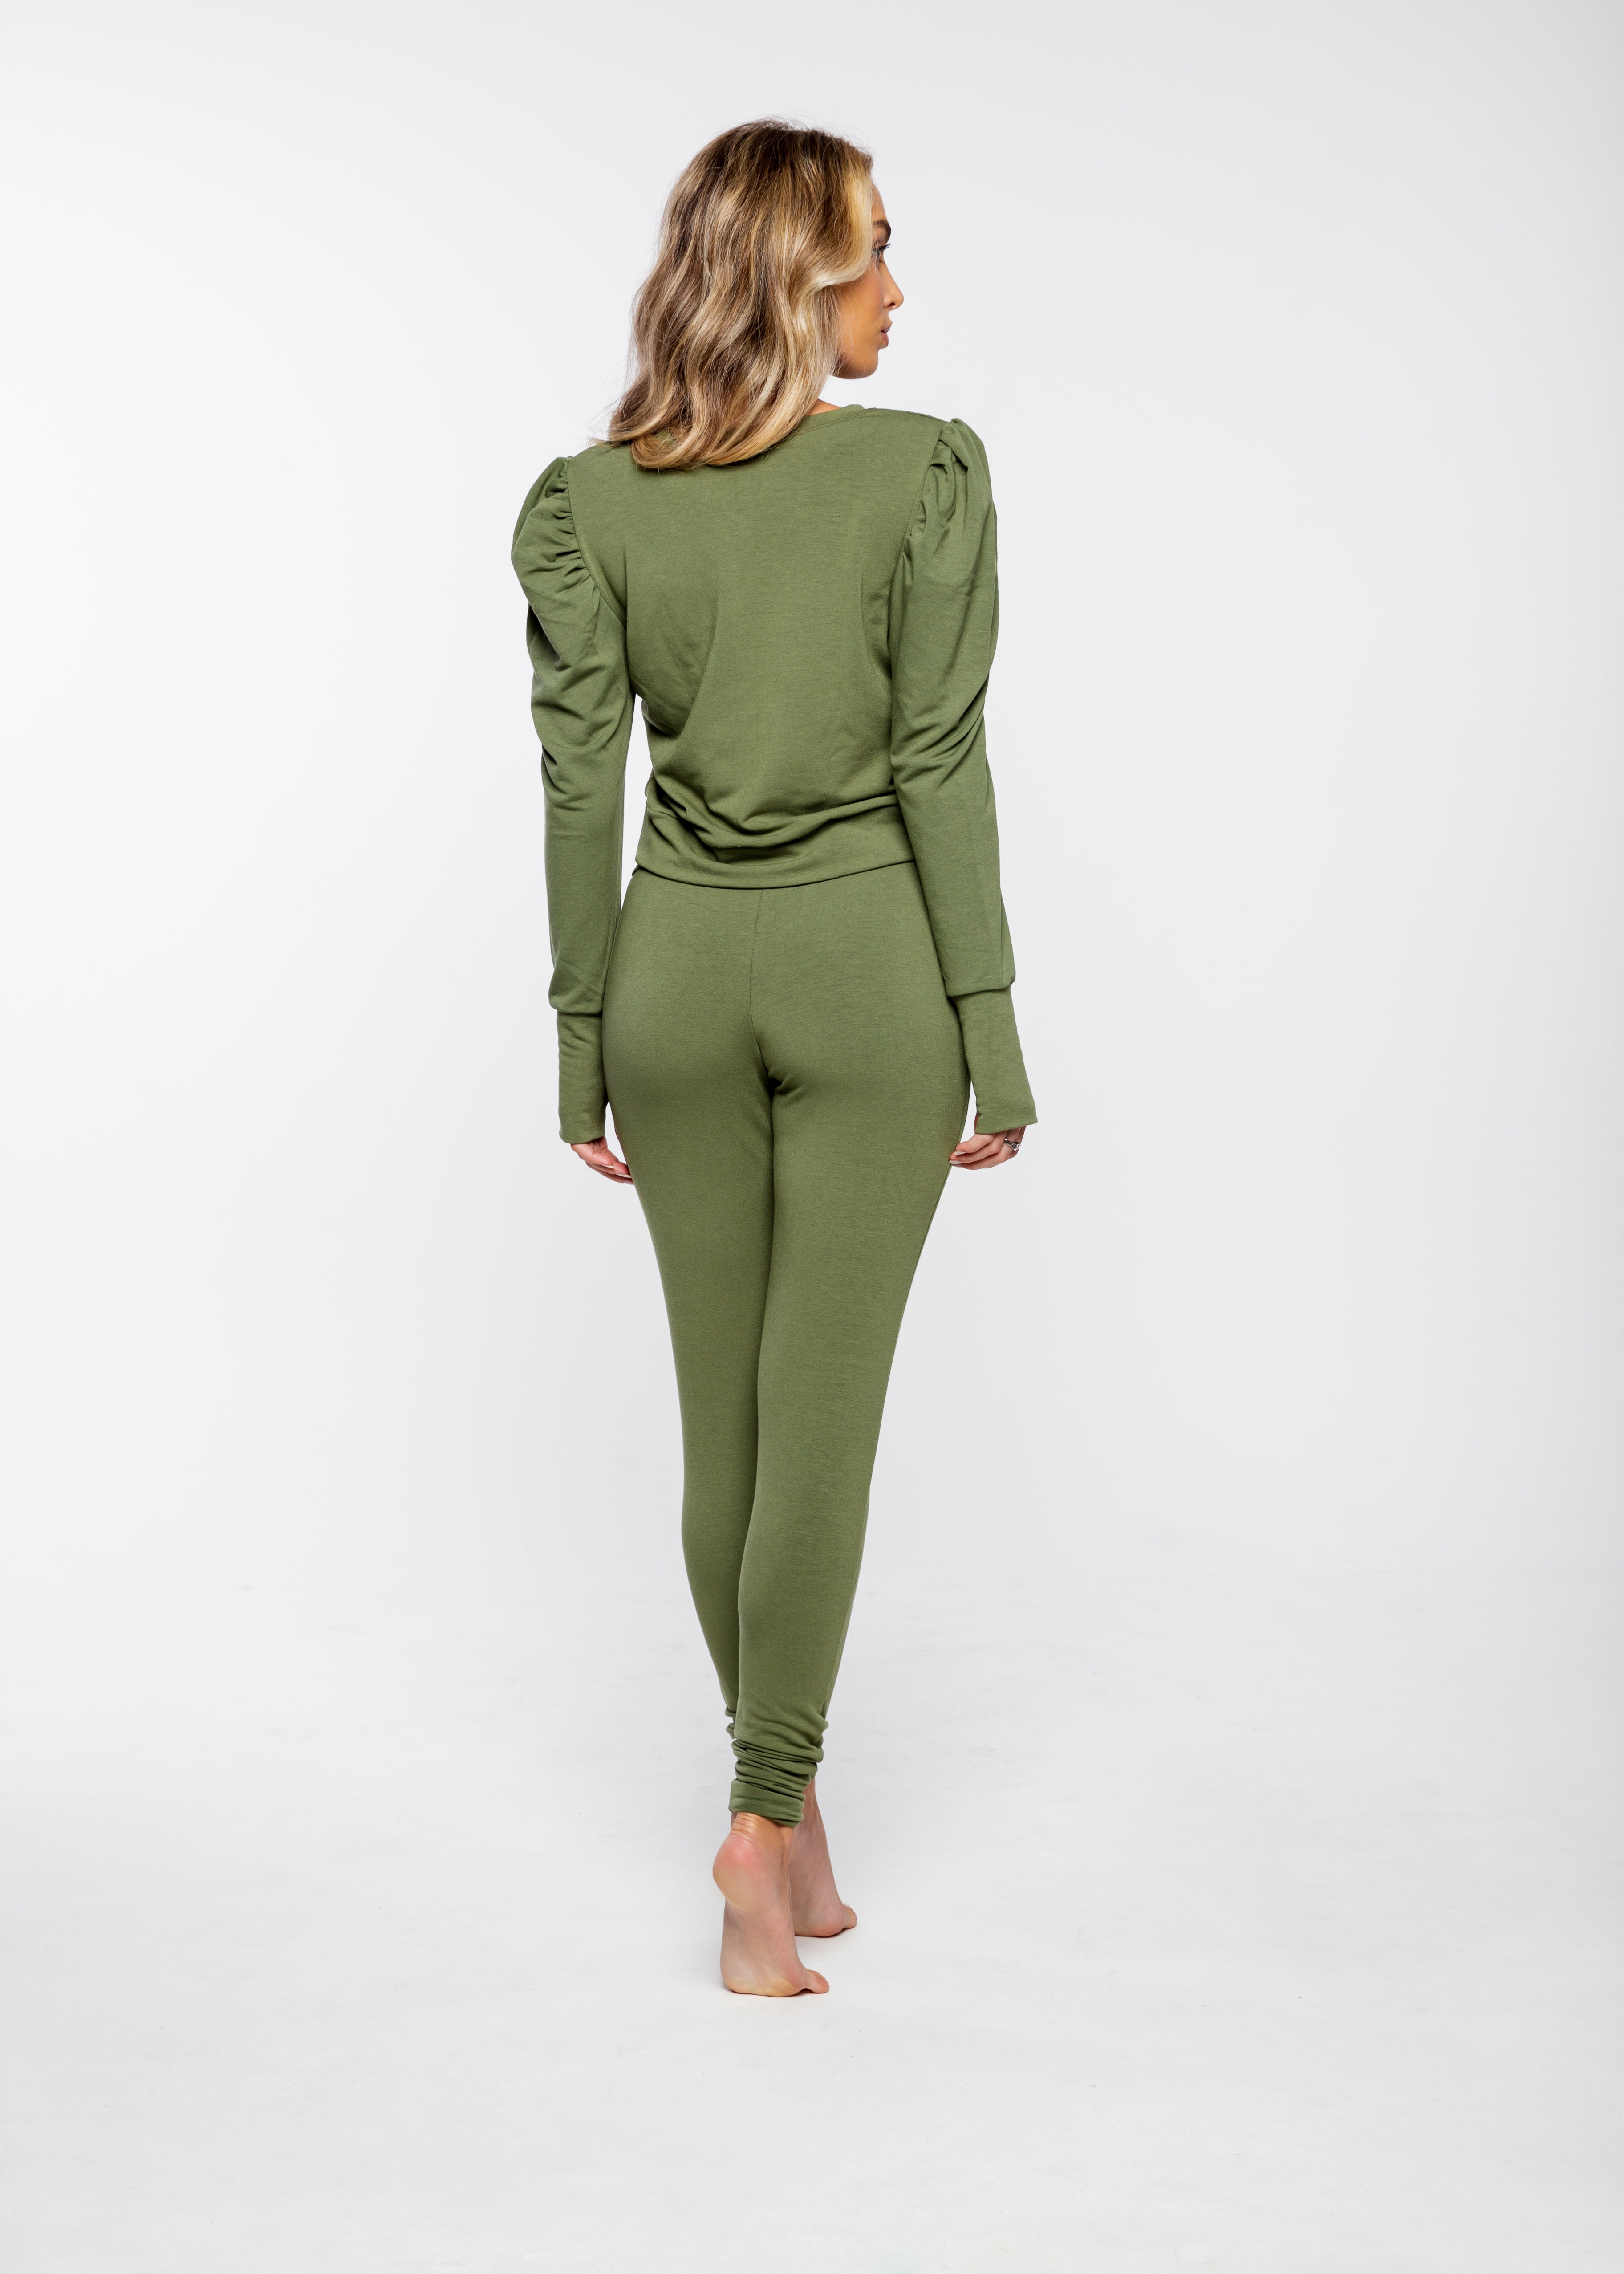 militar green sweat pants, female model